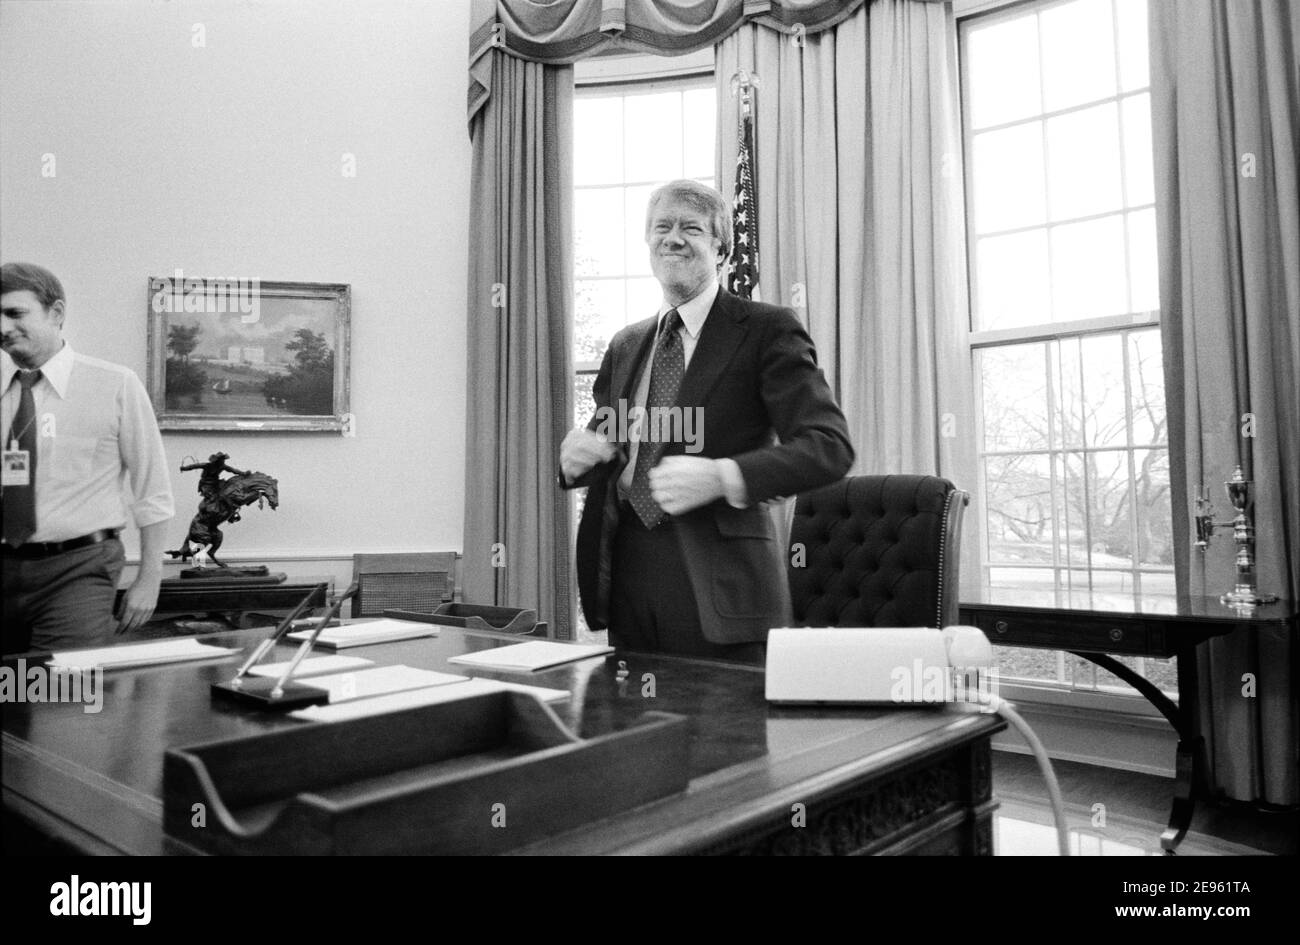 Il presidente degli Stati Uniti Jimmy carter è in piedi dietro la sua scrivania nell'ufficio ovale della Casa Bianca, Washington, D.C., USA, Marion S. Trikosko, 2 febbraio 1977 Foto Stock